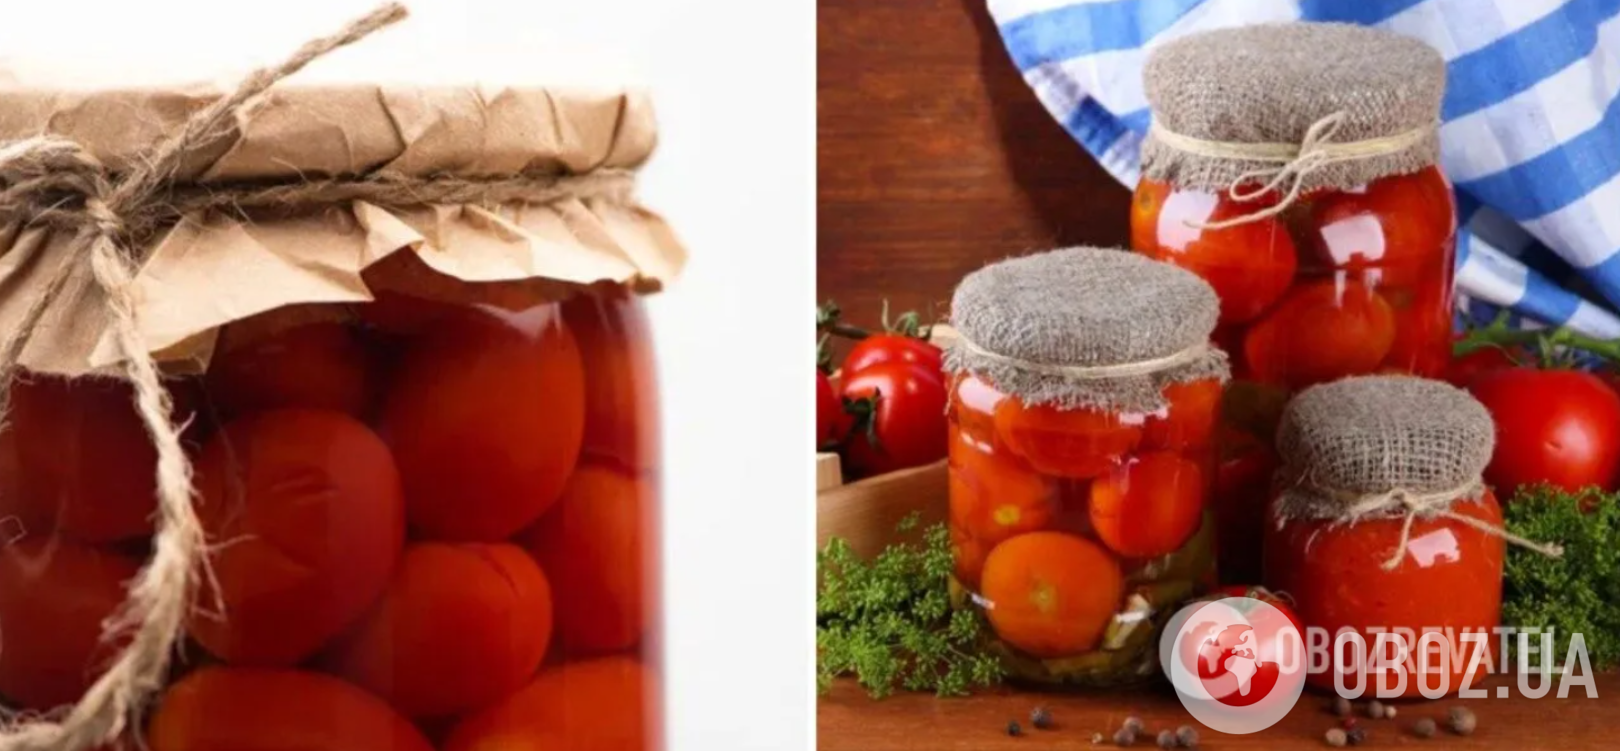 Как нельзя консервировать помидоры: овощи просто испортятся